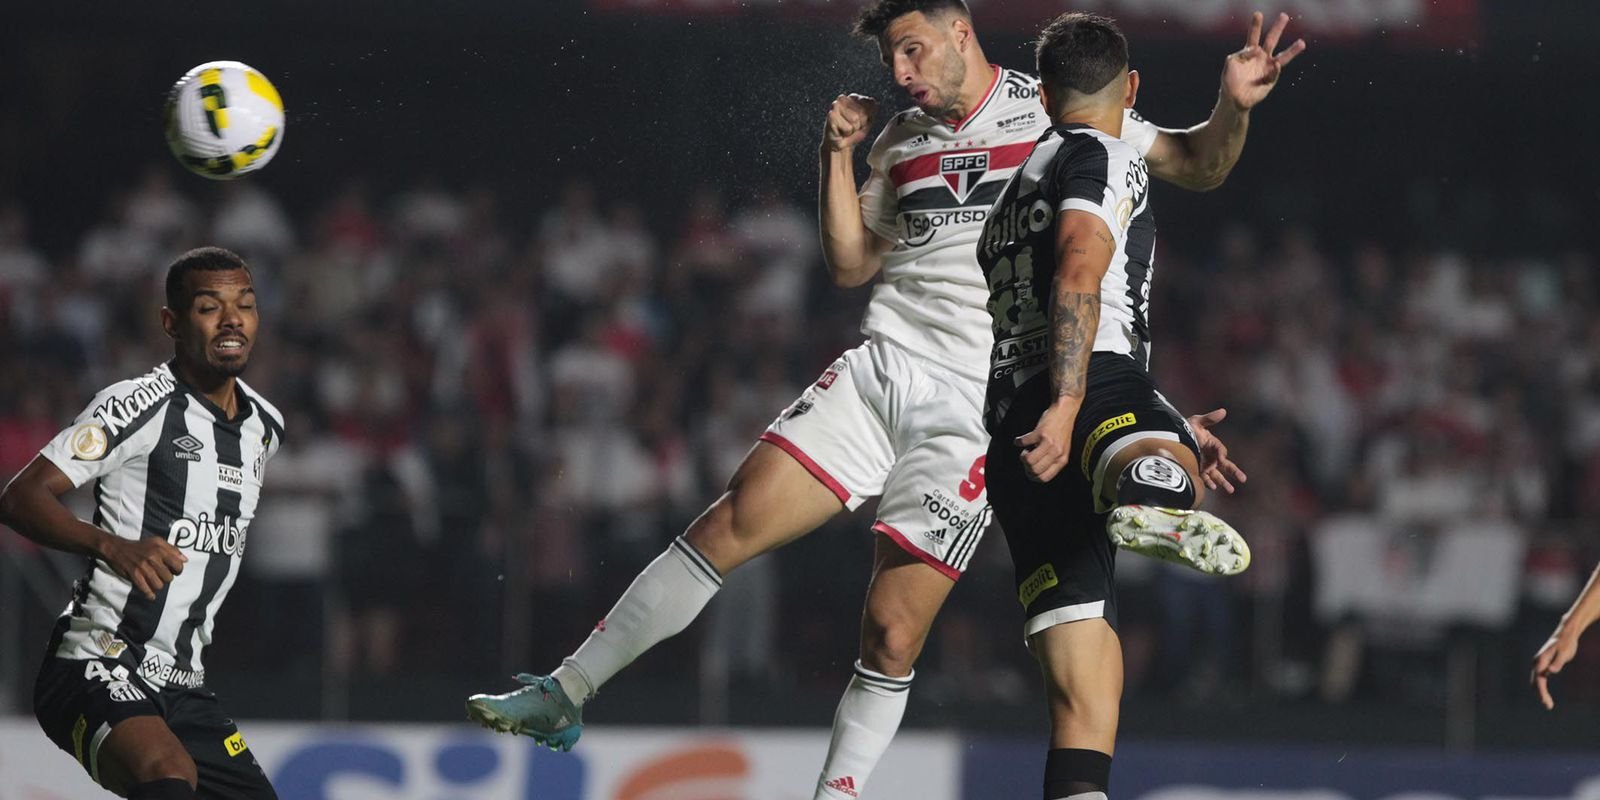 São Paulo derrota Santos em clássico com gol de pênalti no fim